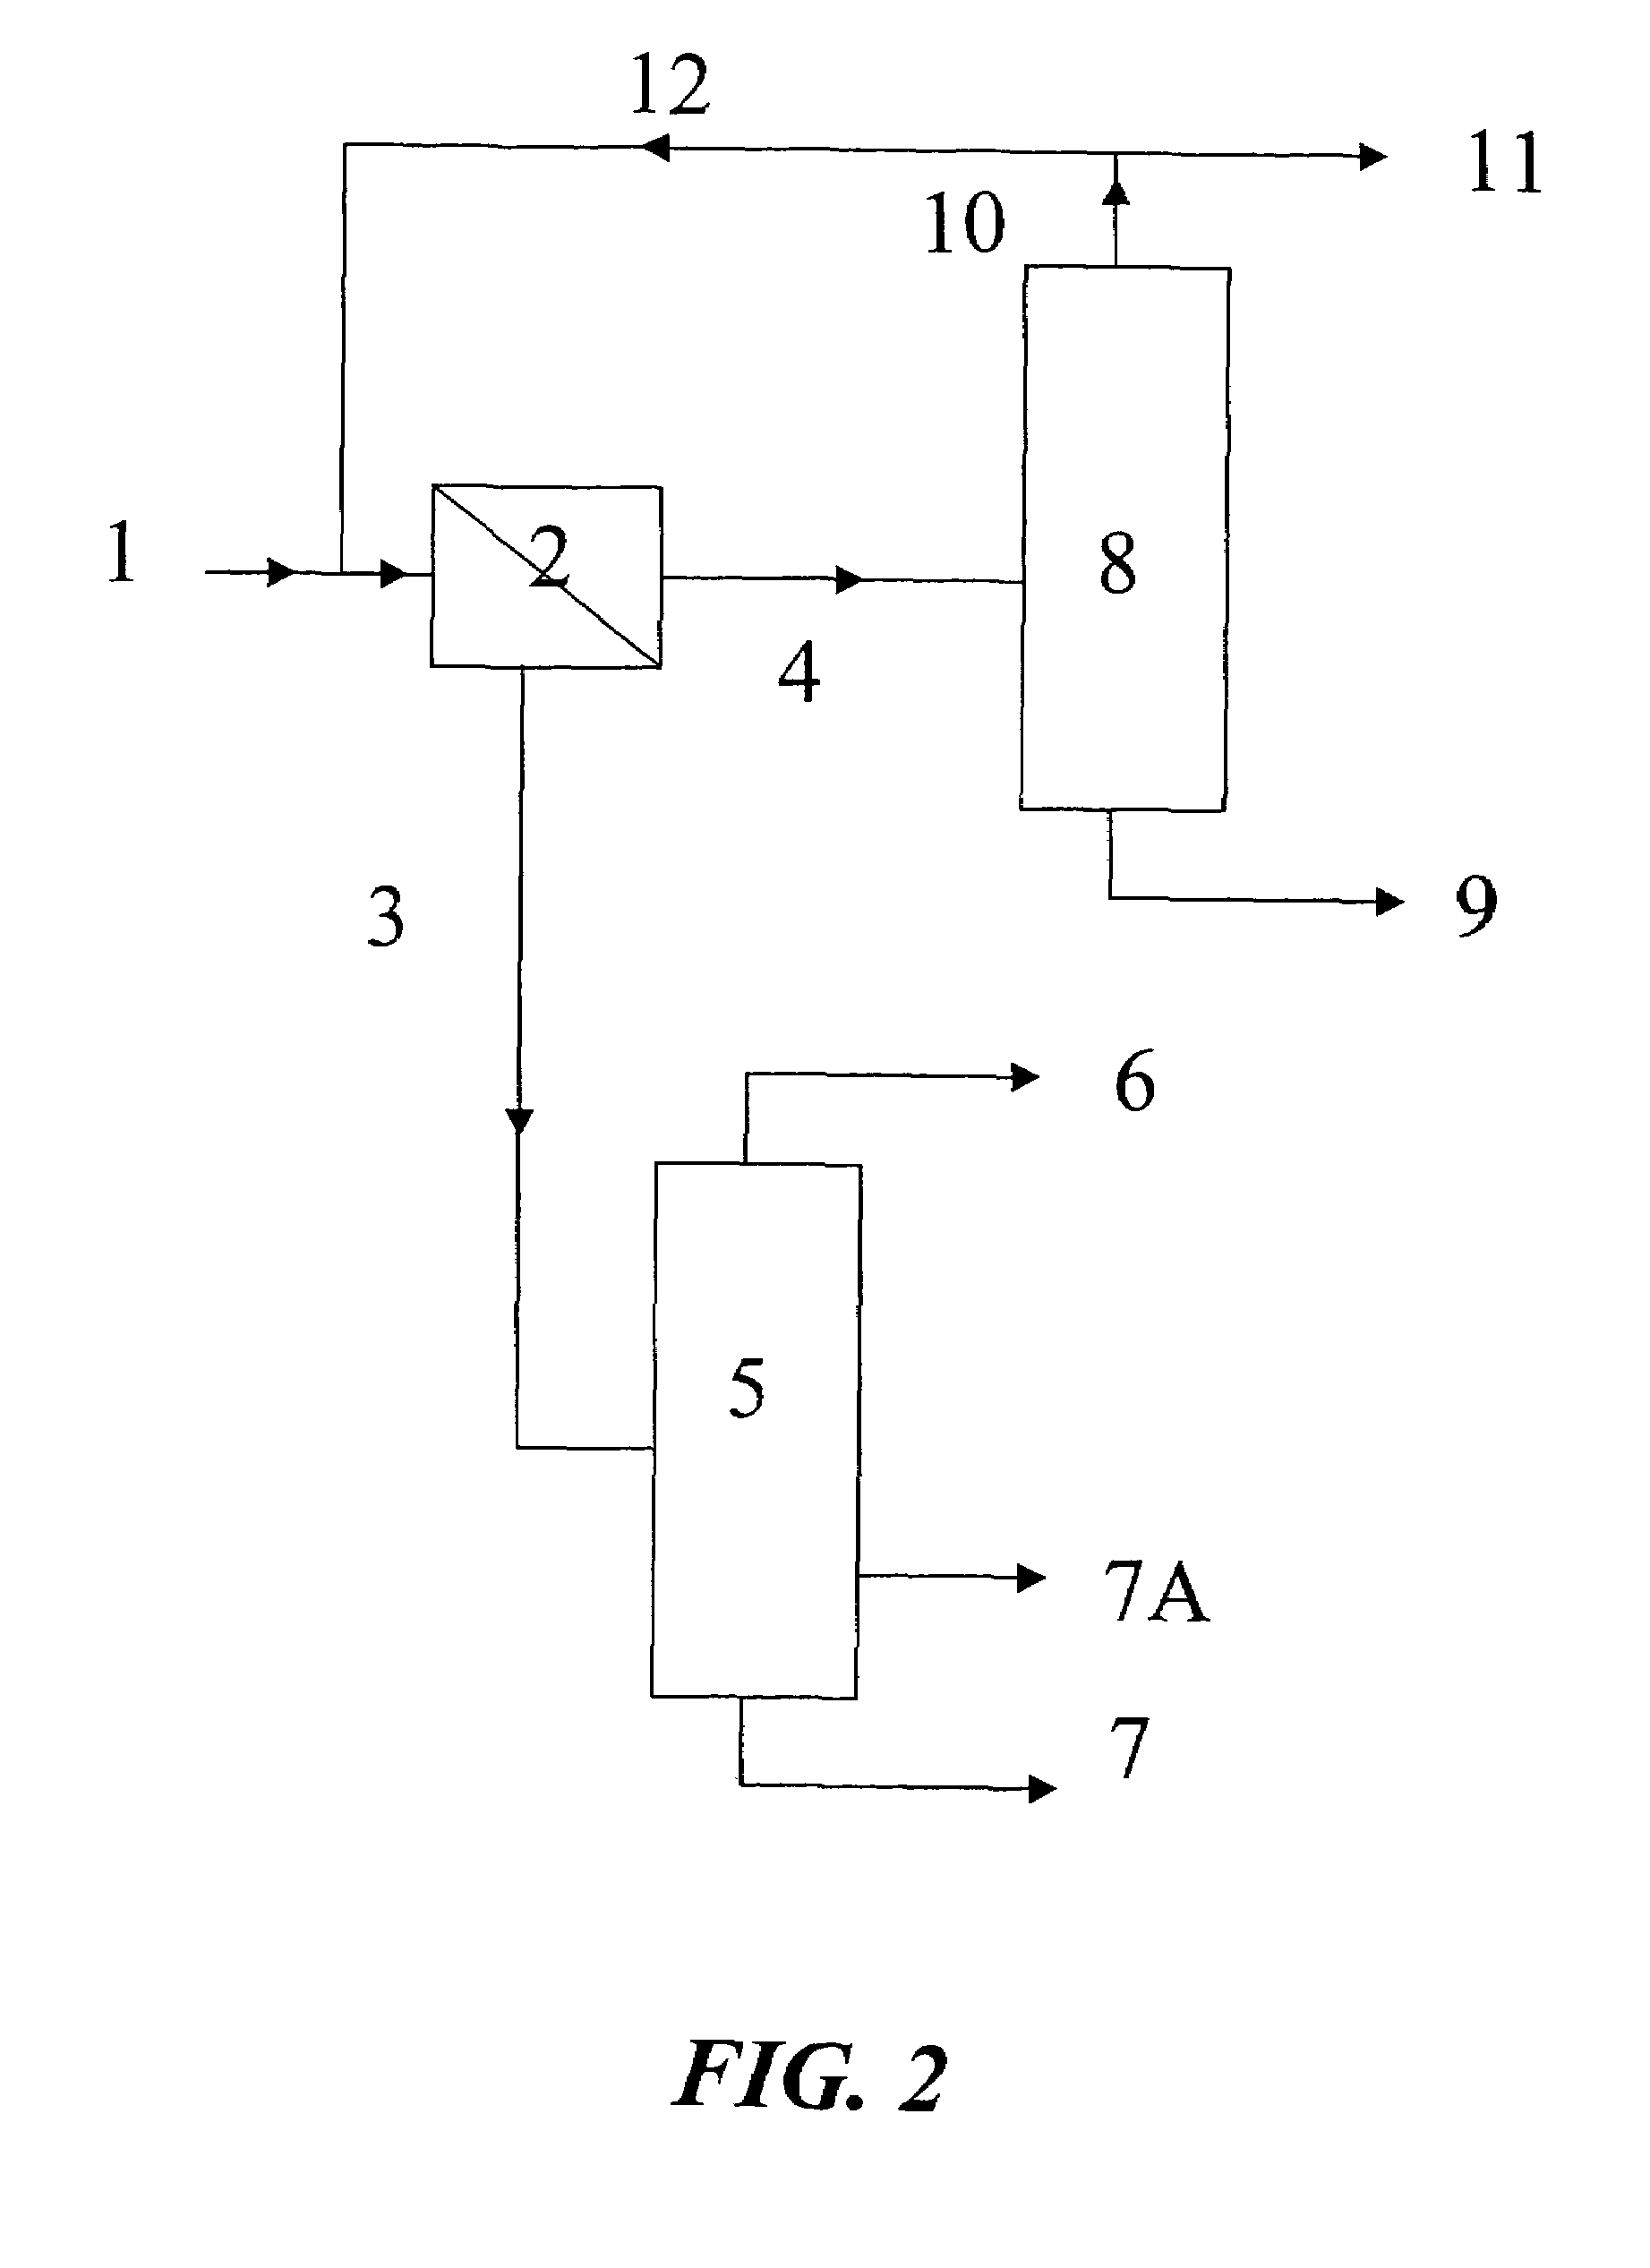 Process for separating 2-butanol from tert-butanol/water mixtures